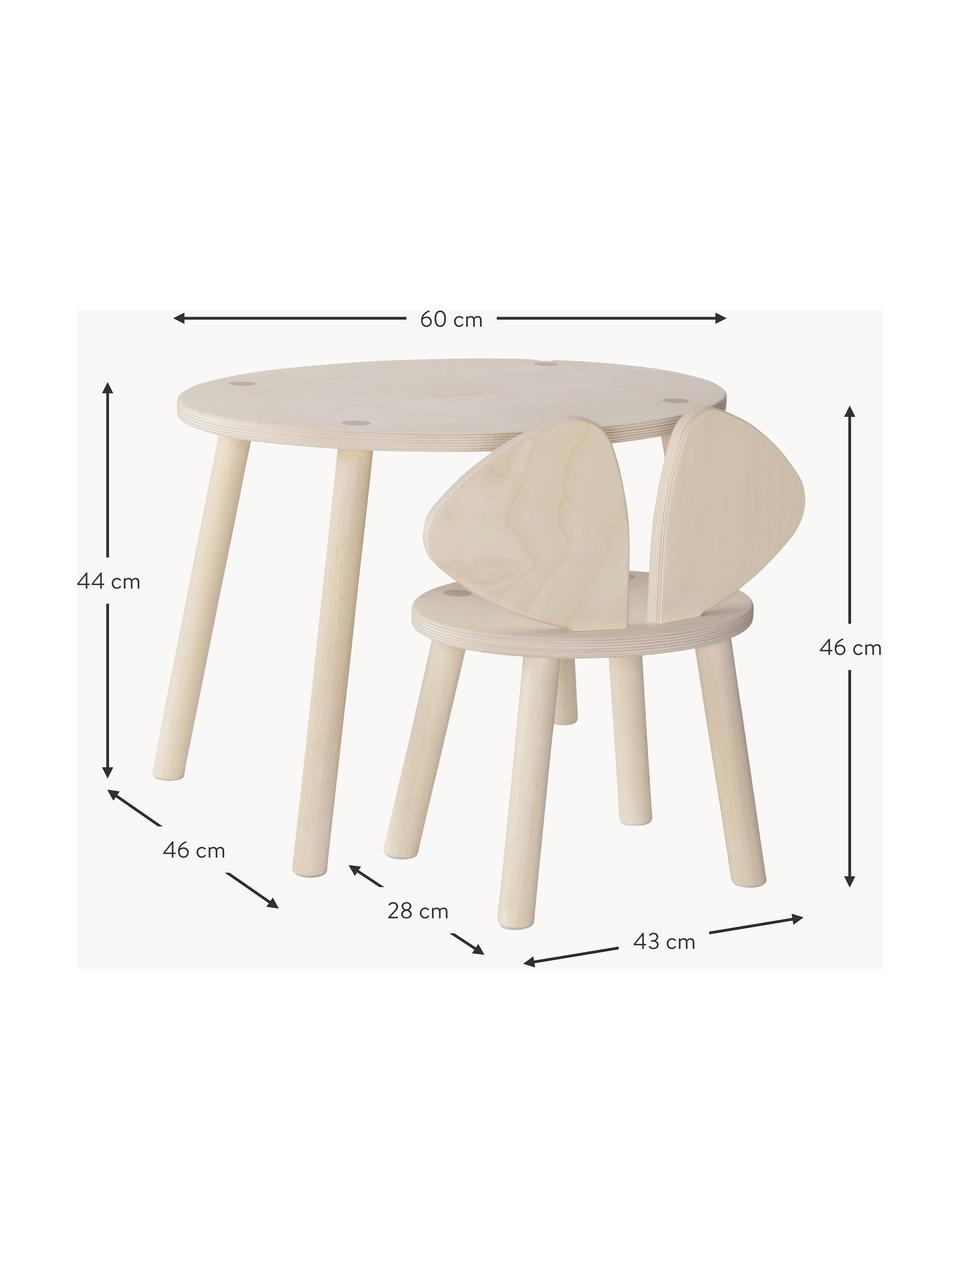 Súprava detského stolíka a stoličky Mouse, 2 diely, Brezová dyha

Tento výrobok je vyrobený z dreva s certifikátom FSC®, ktoré pochádza z udržateľných zdrojov, Brezové drevo, Súprava s rôznymi veľkosťami